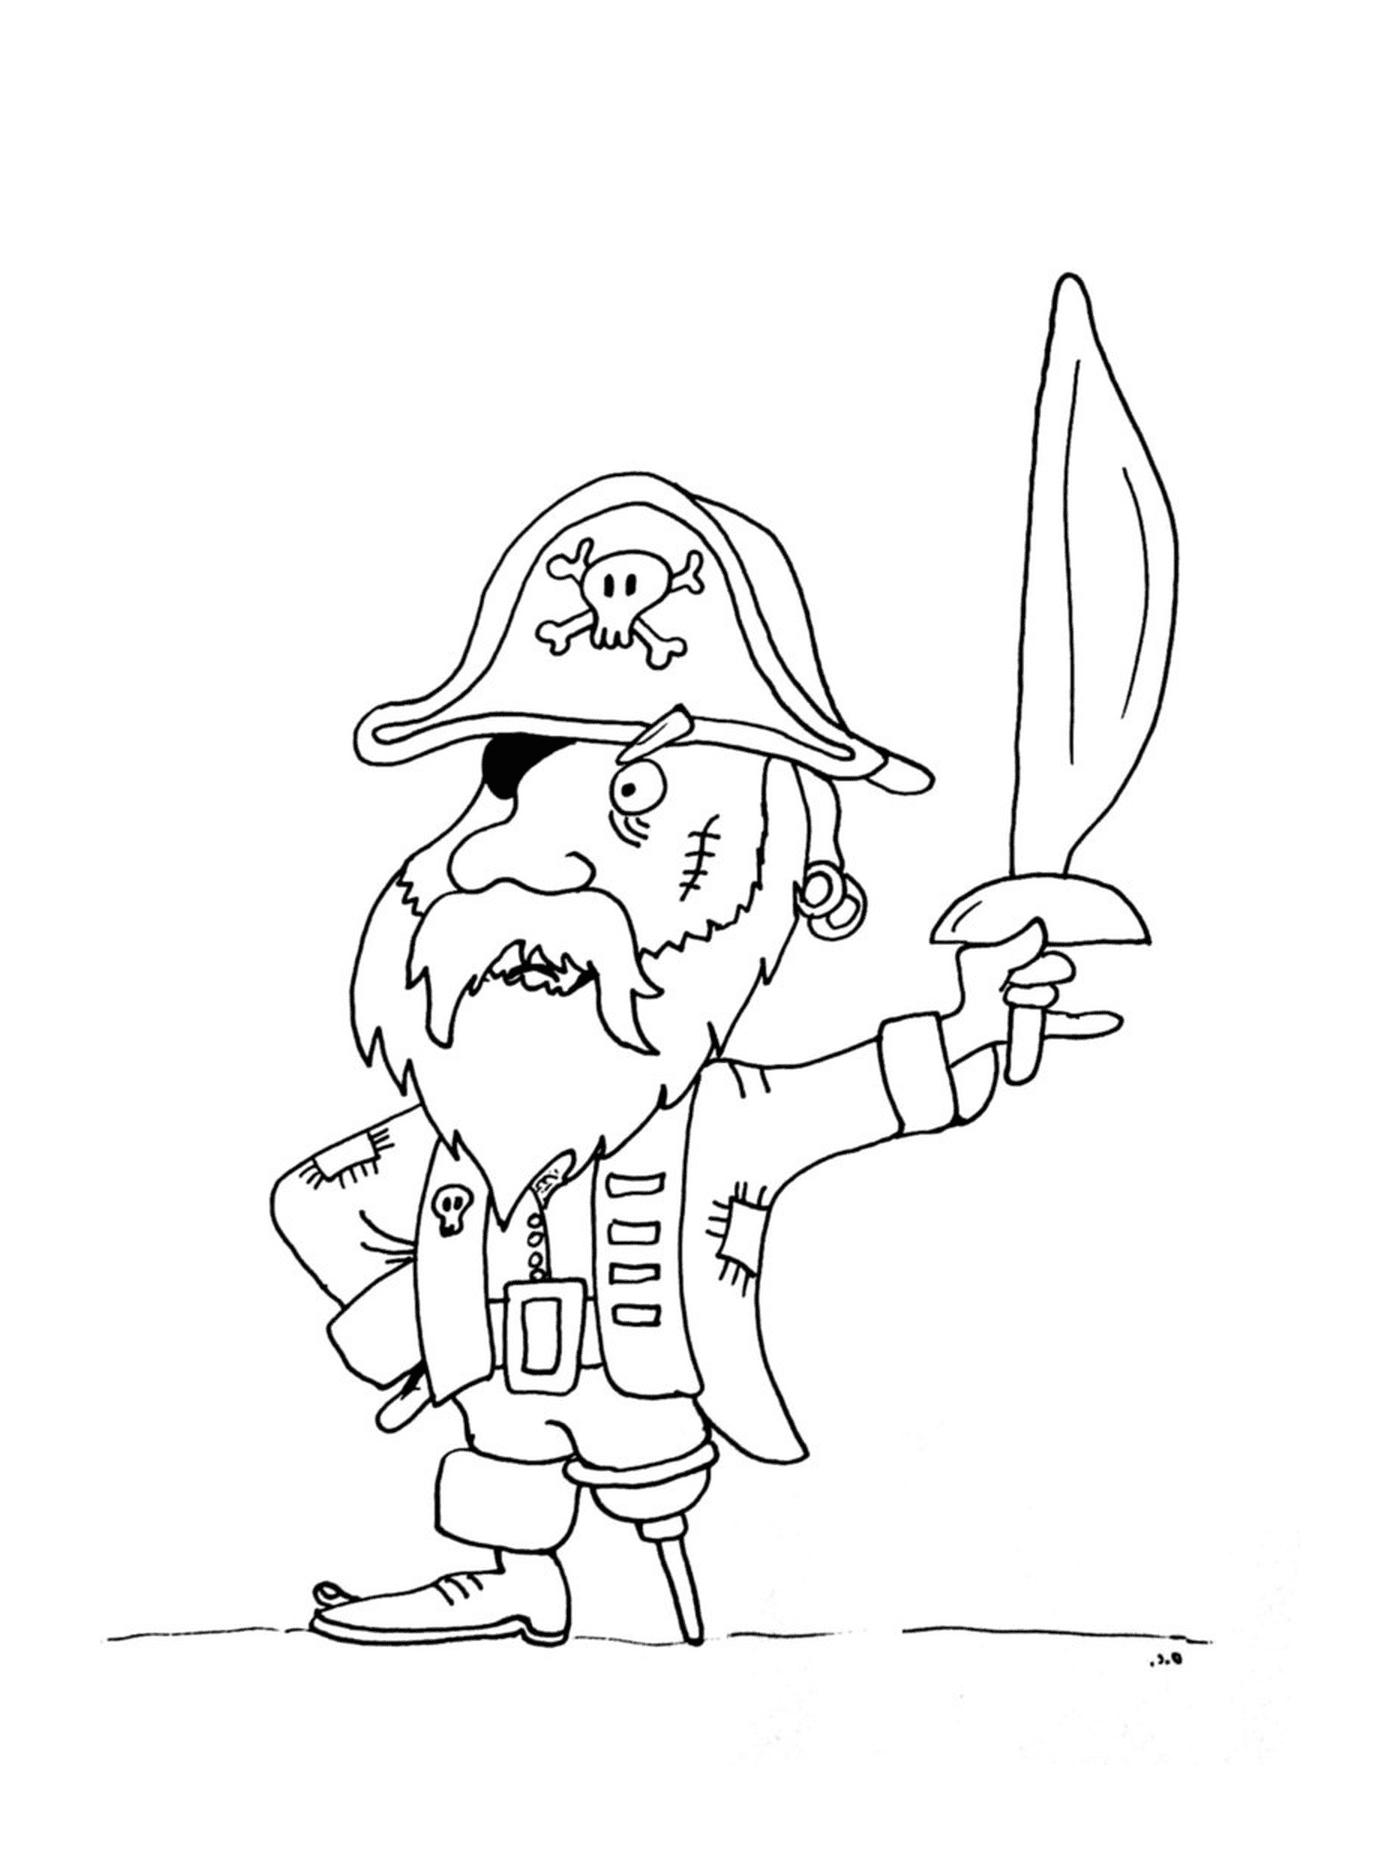  Pirata com perna de madeira corajosa 